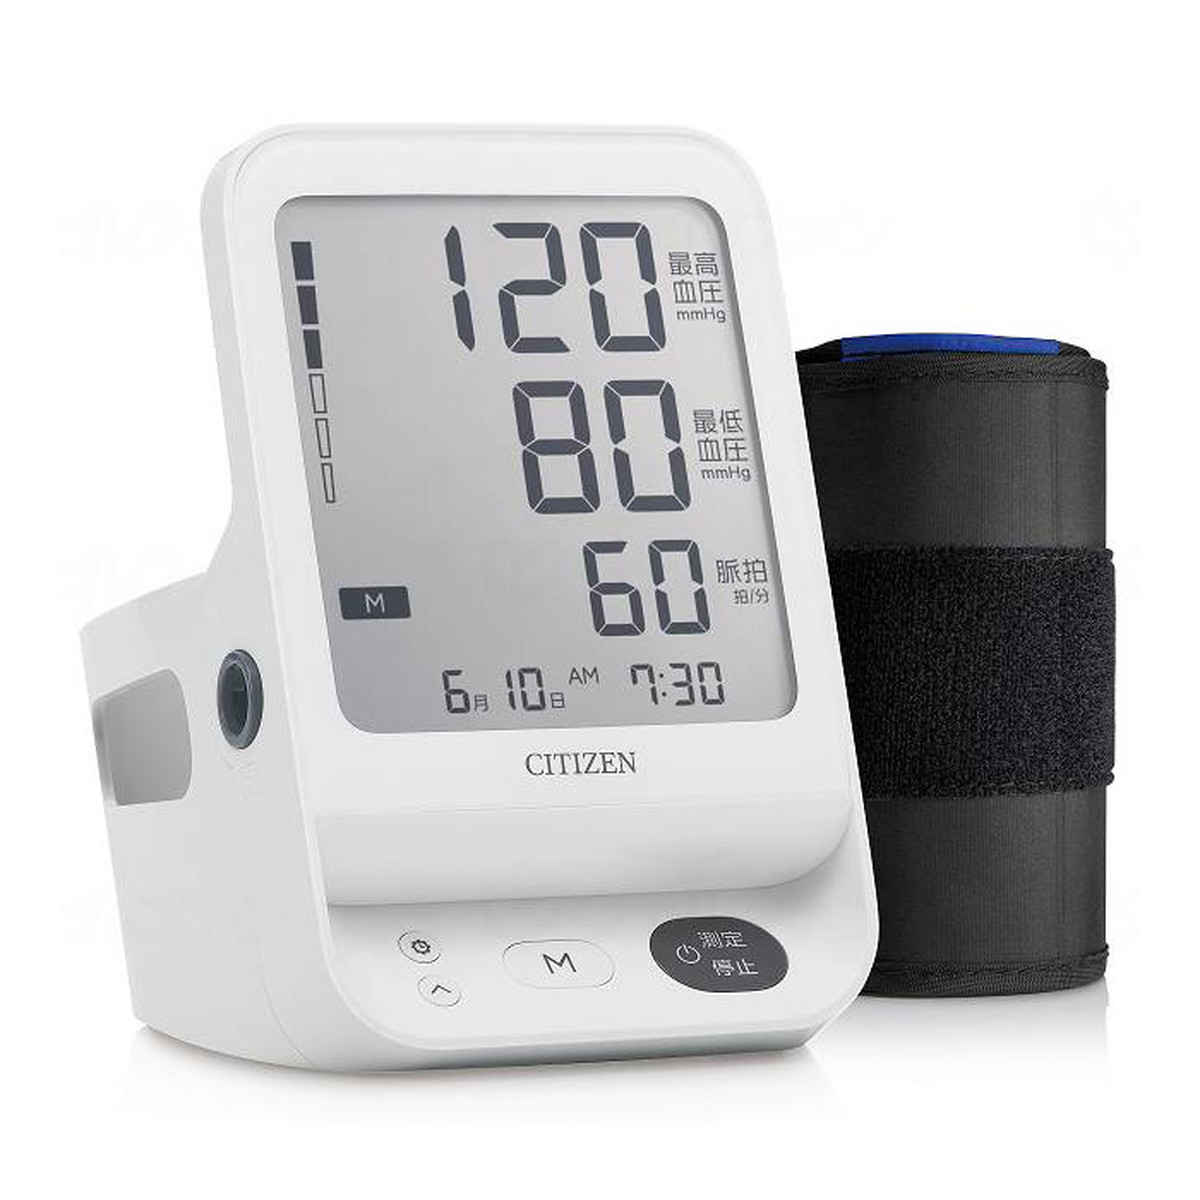 CITIZEN 上腕式血圧計 CHUH533 ×10個 血圧計の商品画像